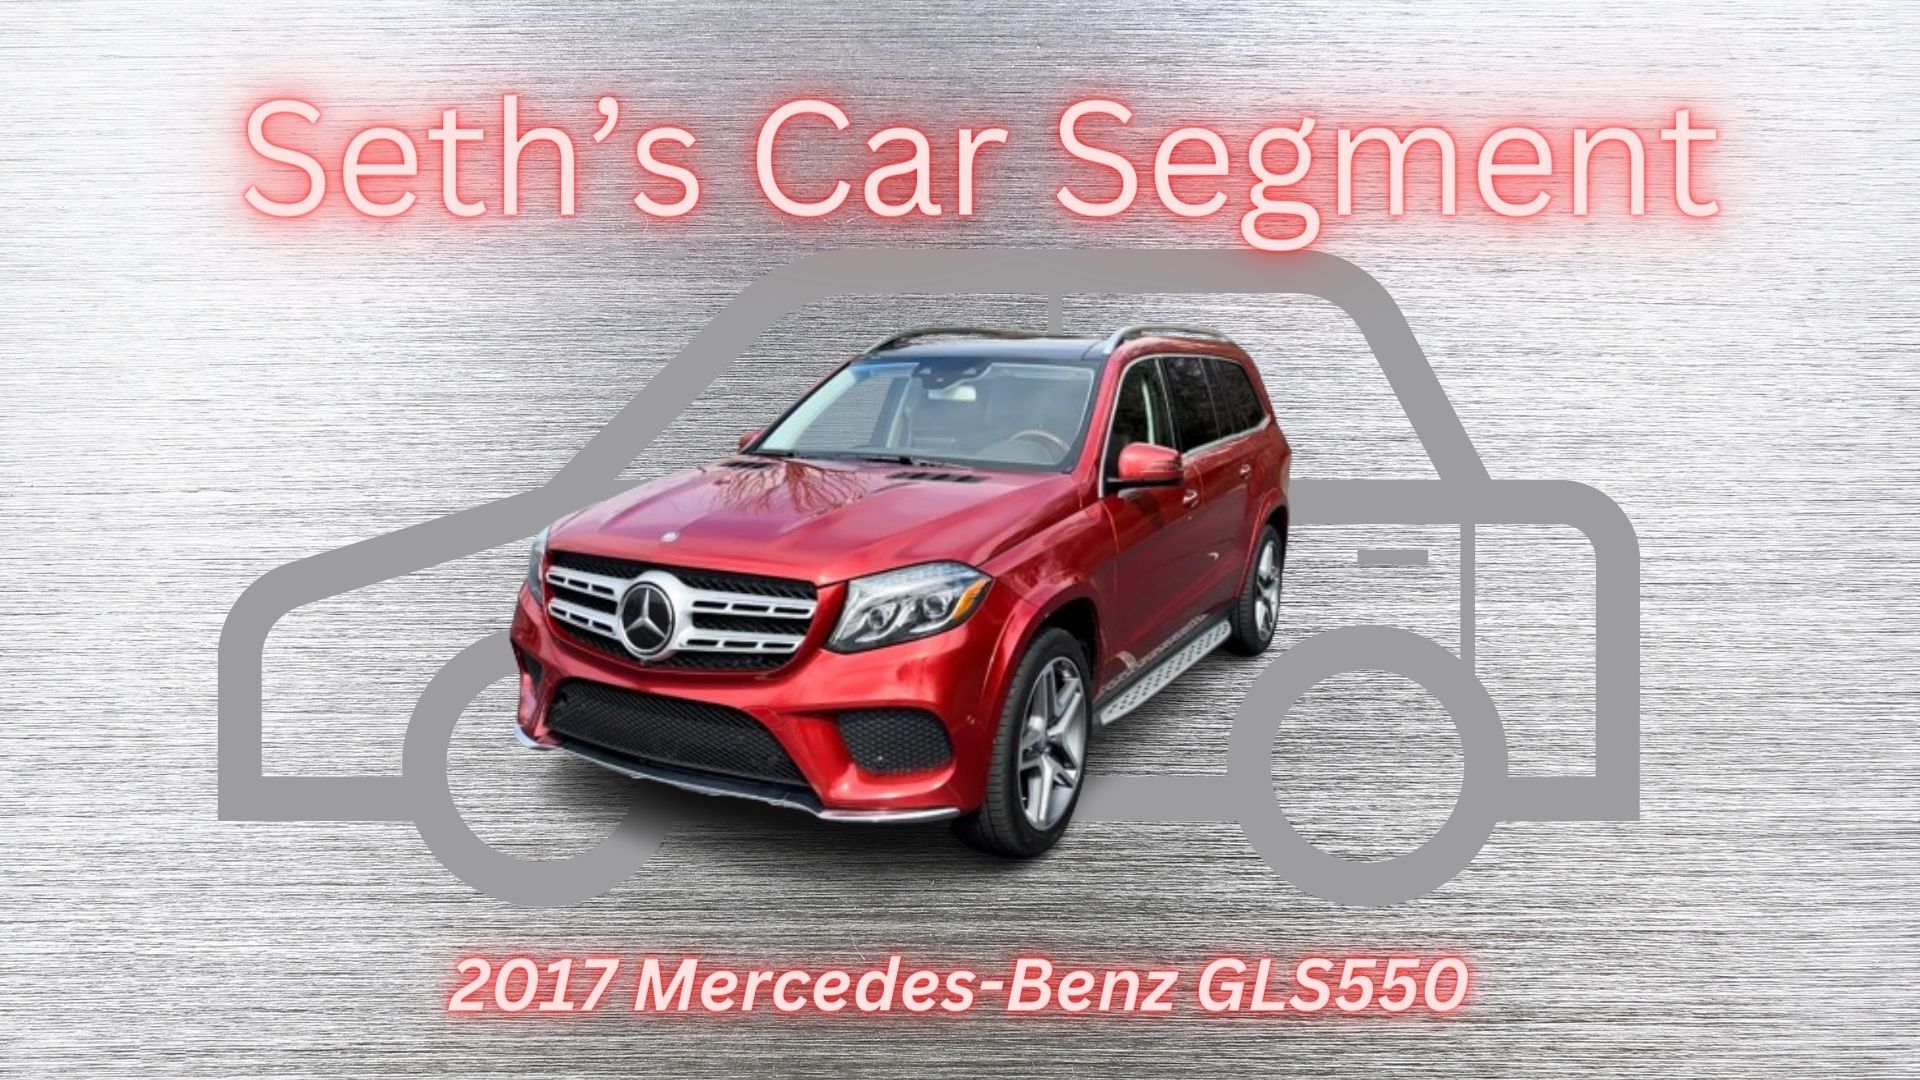 Seths Car Segment: 2017 Mercedes-Benz GLS550